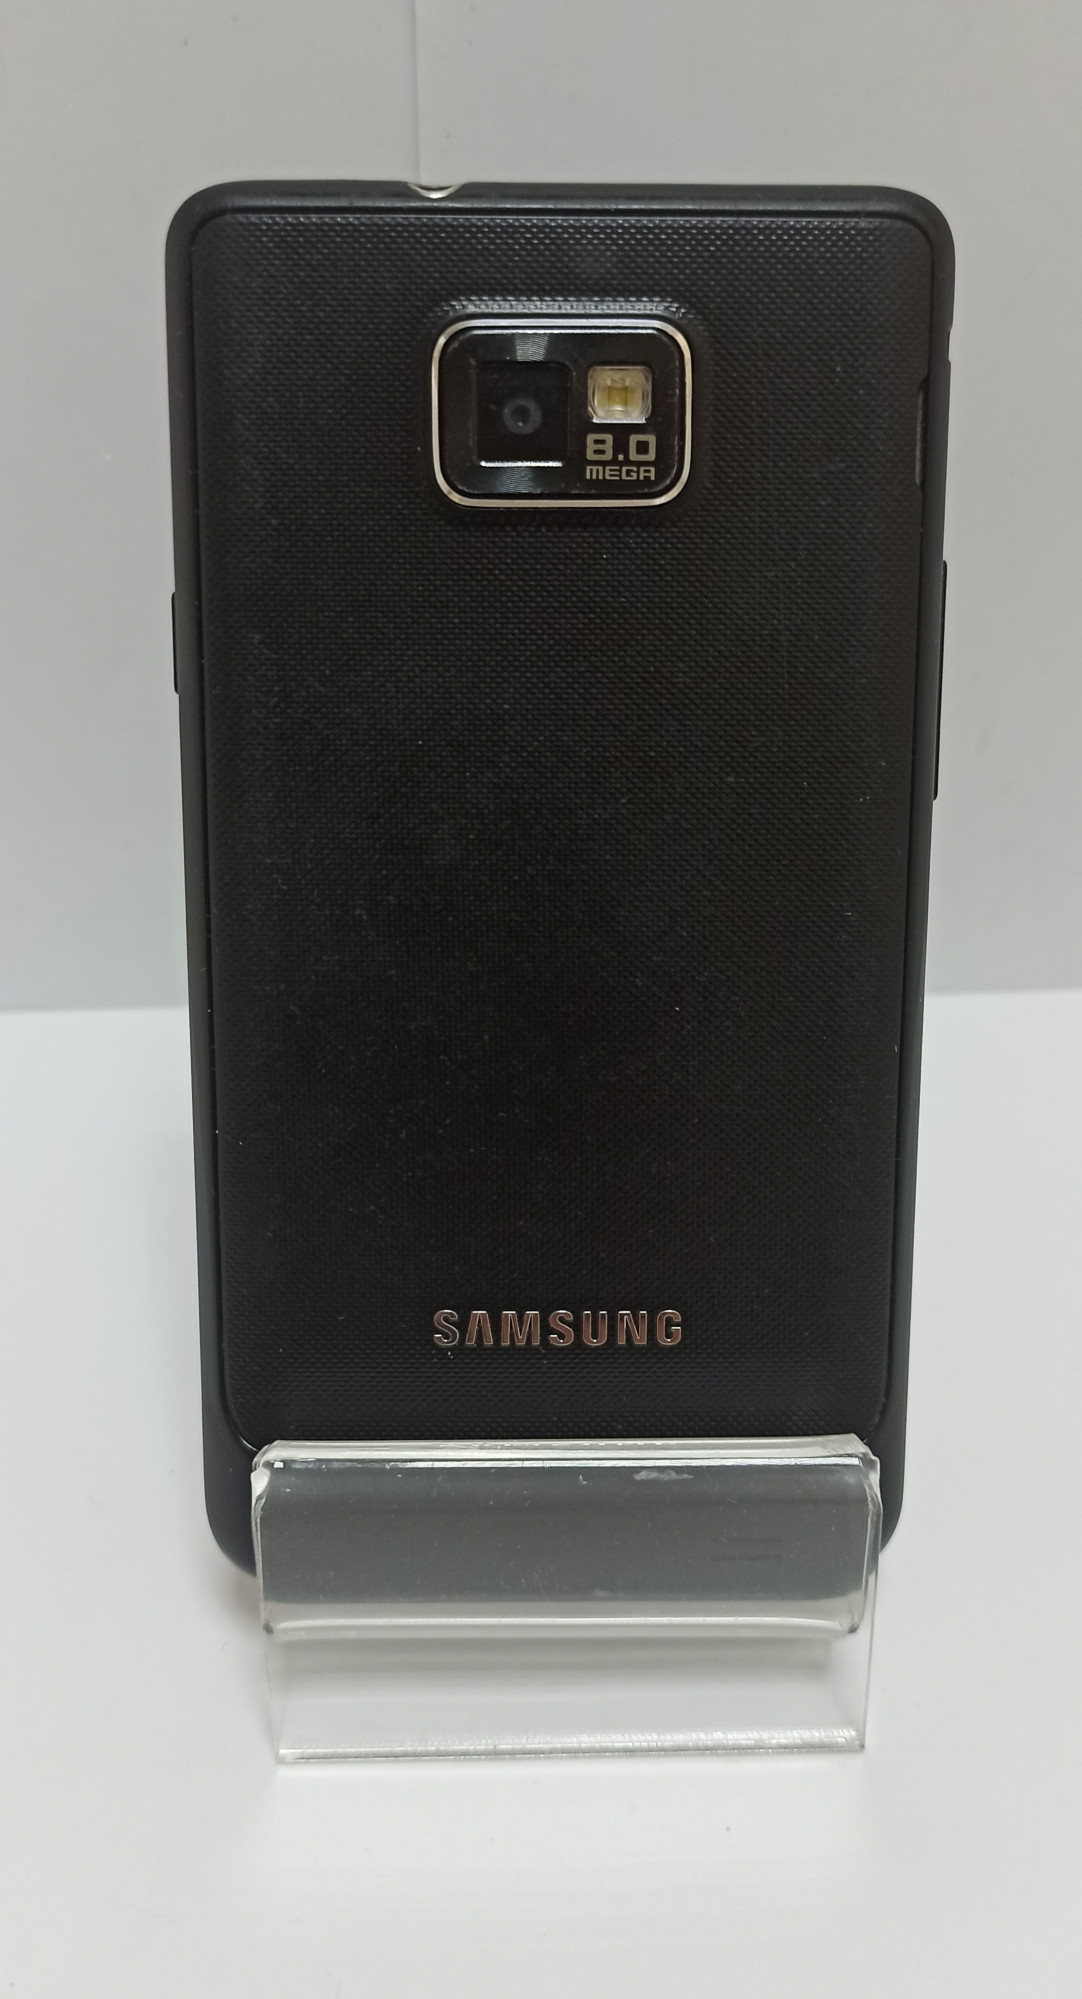 Samsung Galaxy S2 (GT-I9100) 1/16Gb 3